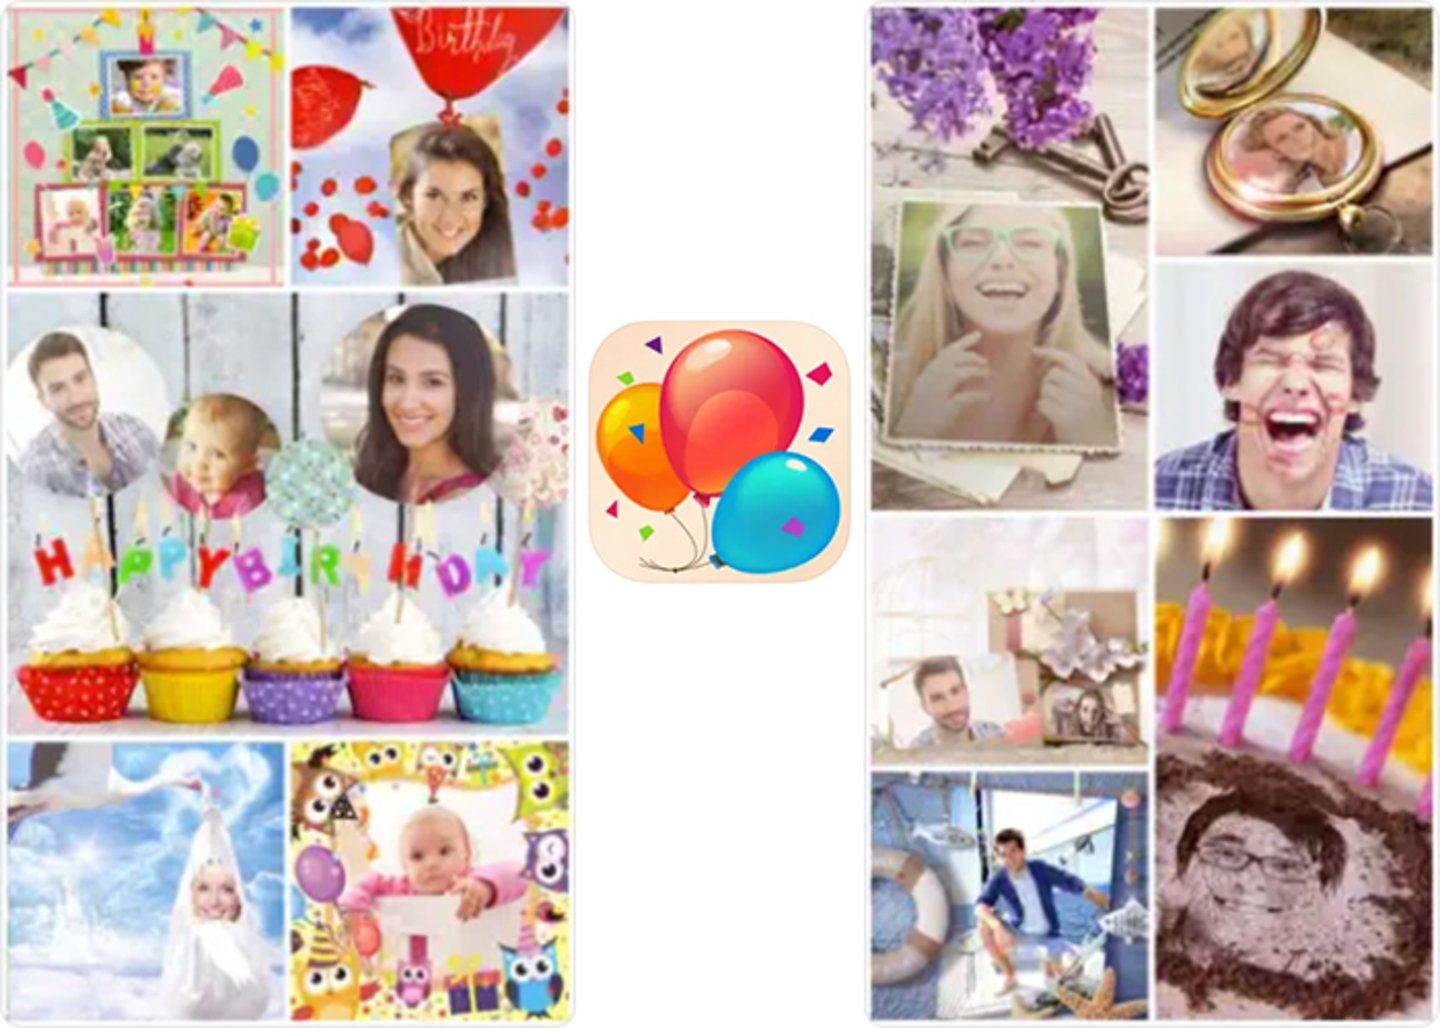 Celebra con estilo- marcos de cumpleaños gratis para tus fotos